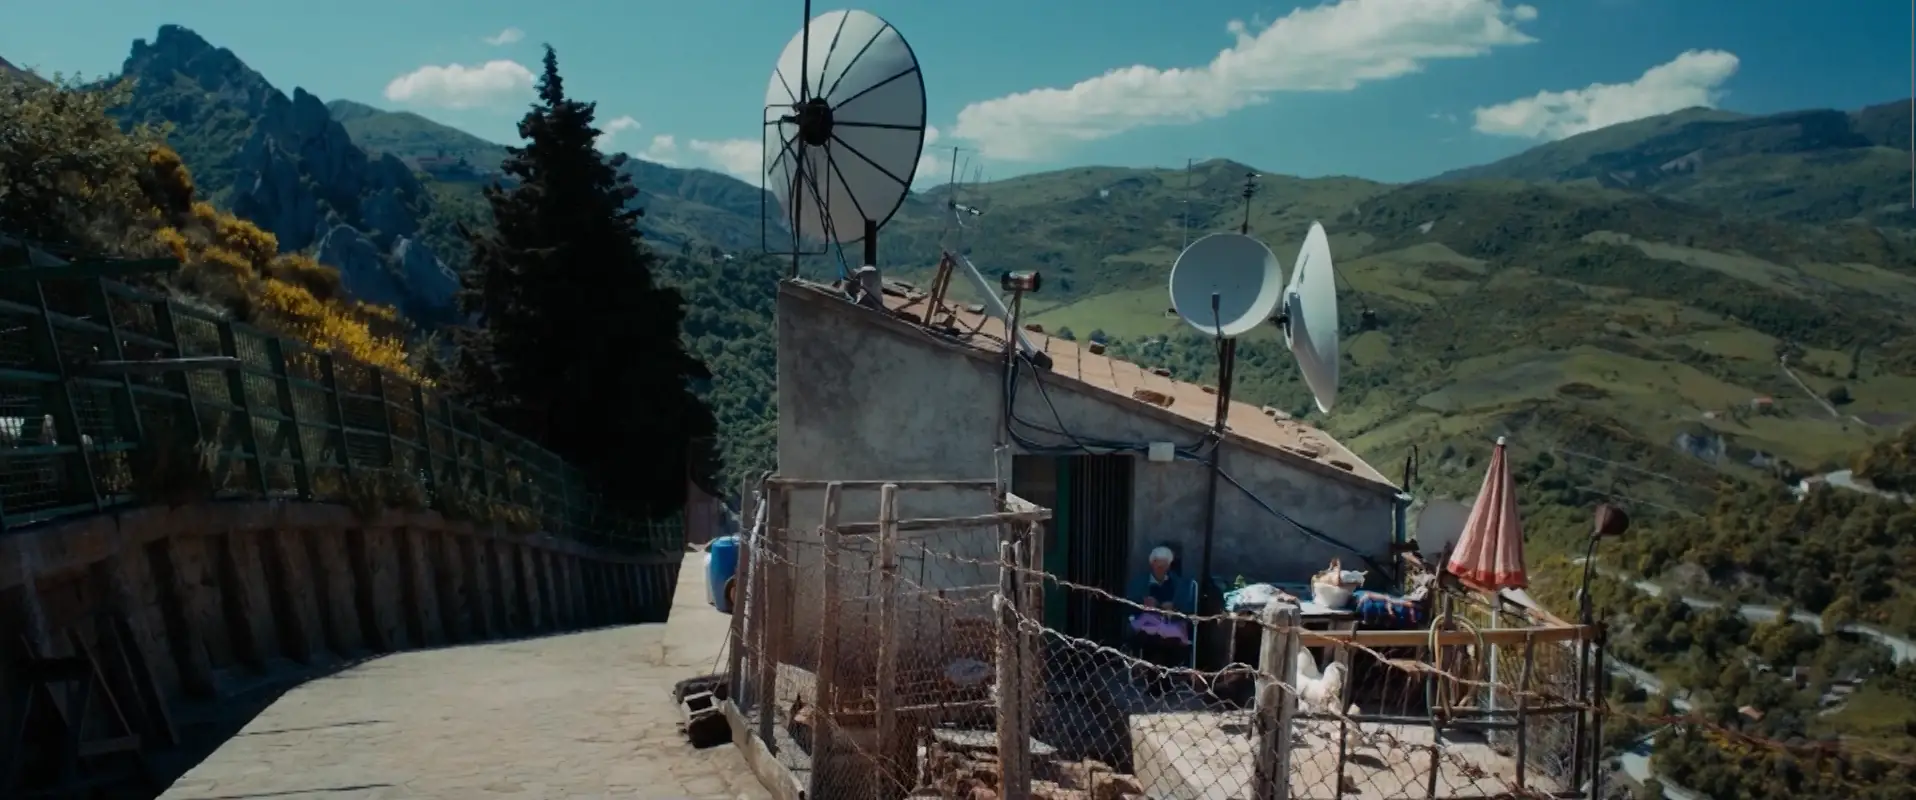 Затащить к себе любой ценой: итальянская комедия «Большая афера в маленьком городе» показывает операцию по спасению маленького городишки